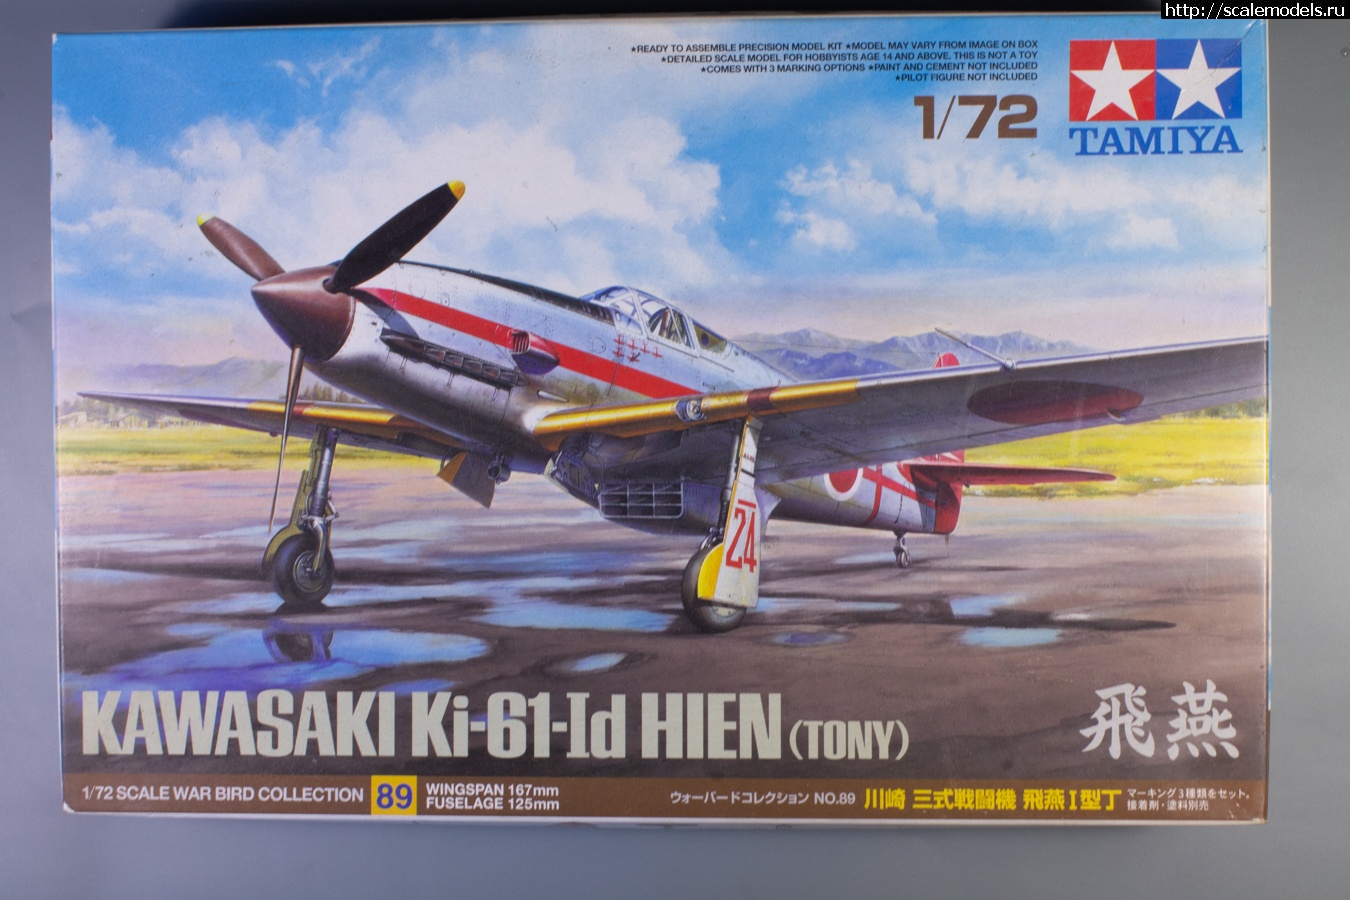 1/72 Tamiya Kawasaki Ki-61 Hien  